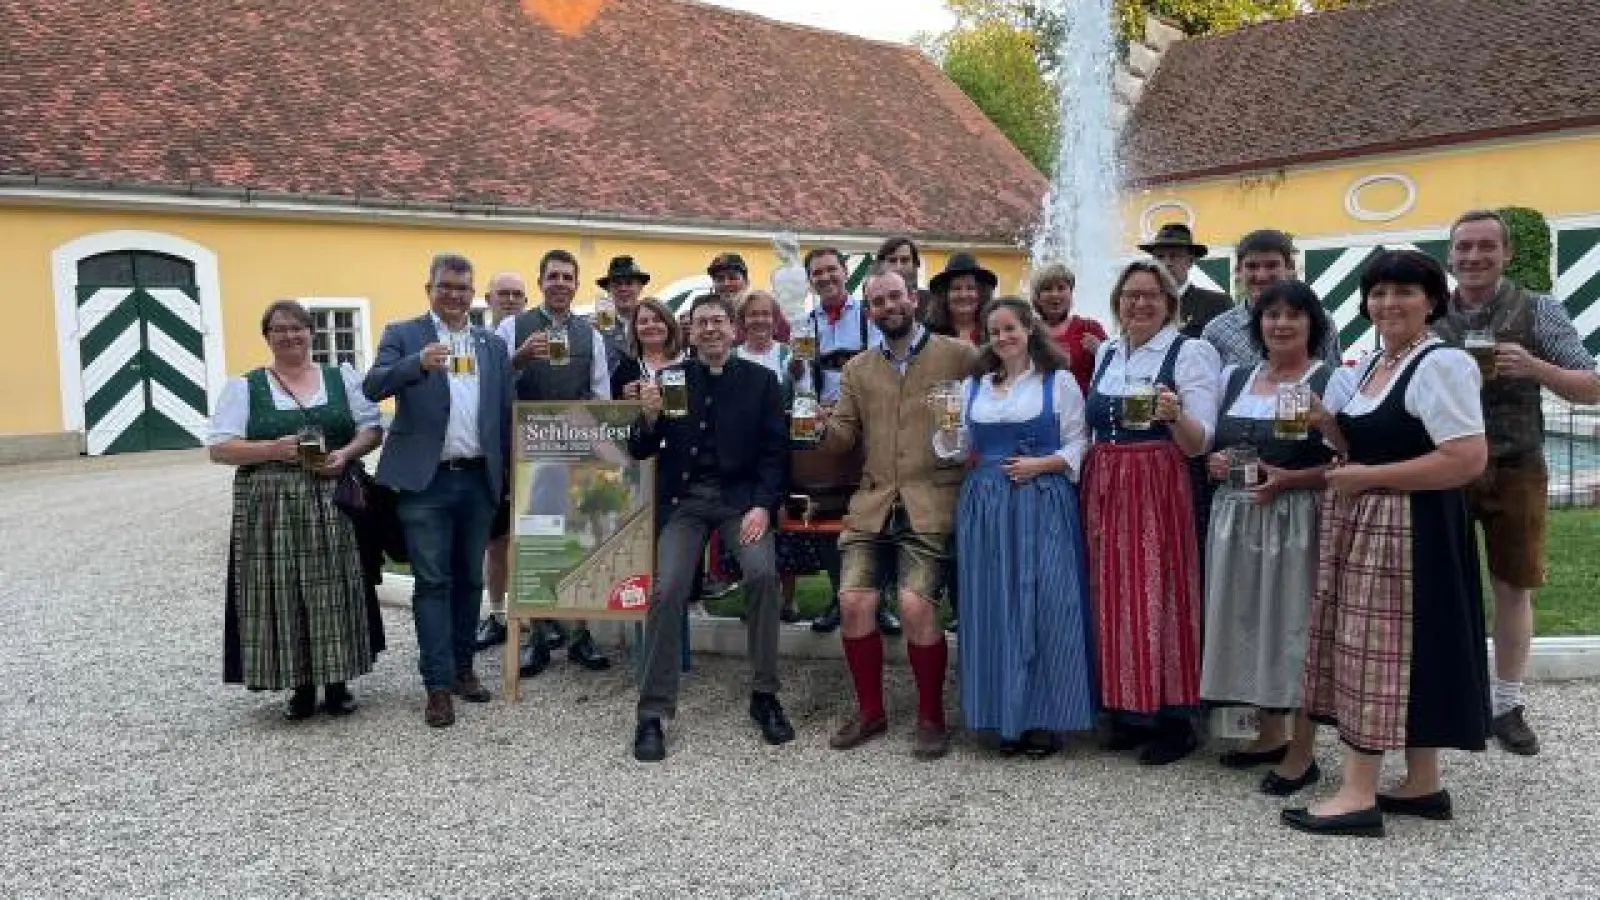 Bei einer Bierprobe   stimmte sich das gesamte Schlossfestteam kürzlich auf die Benefiz-Veranstaltung ein. Die Feier in Pöttmes findet am 21. Mai statt. 	Foto: privat (Foto: privat)